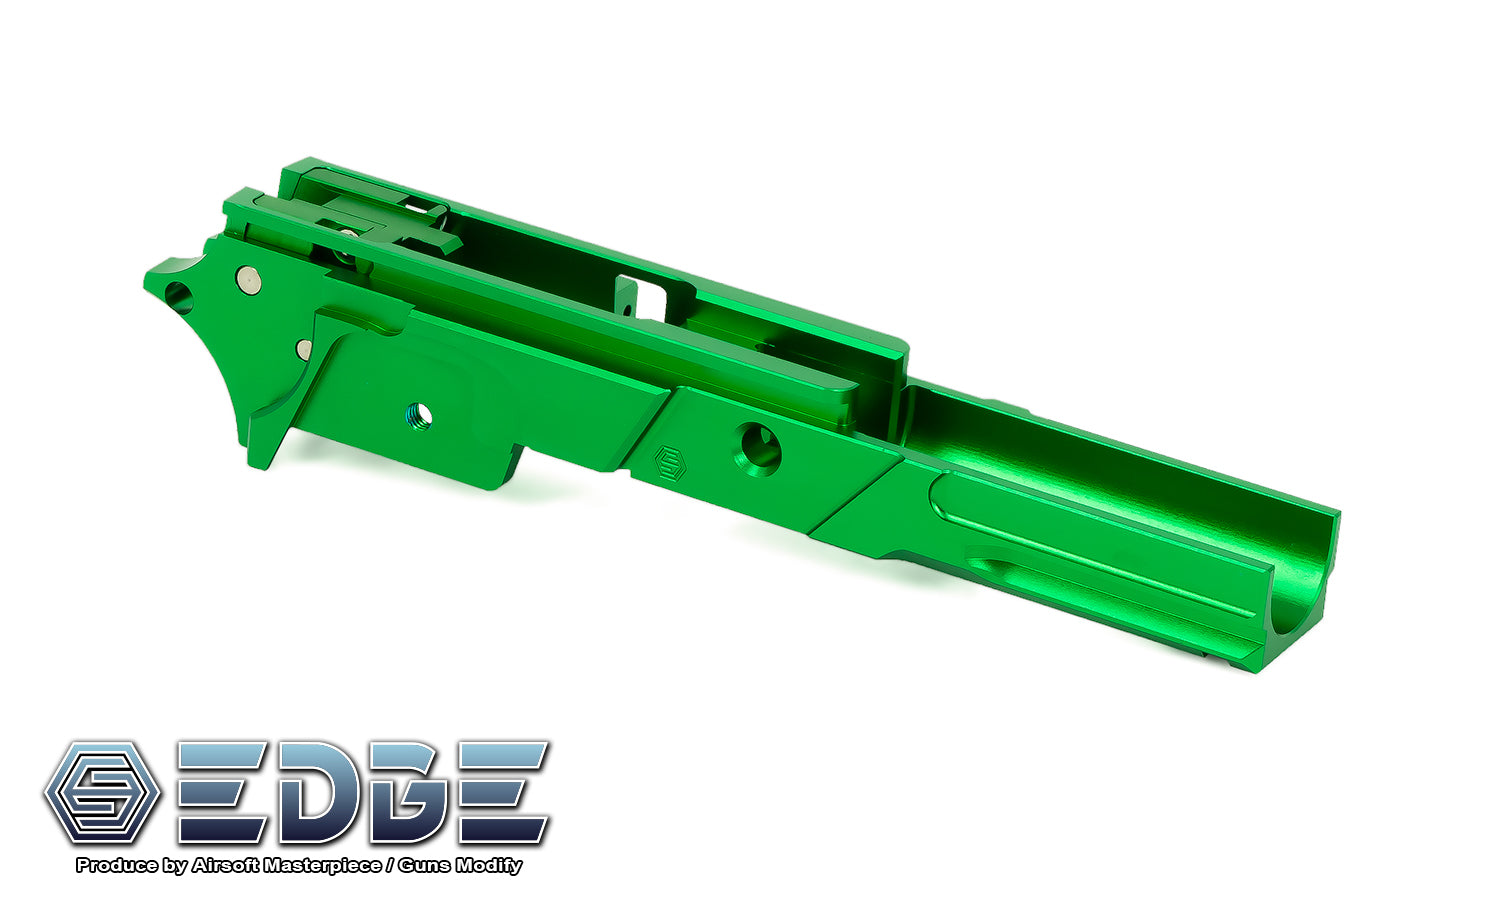 EDGE “STRAT” 3.9" Aluminum Frame for Hi-CAPA - Green